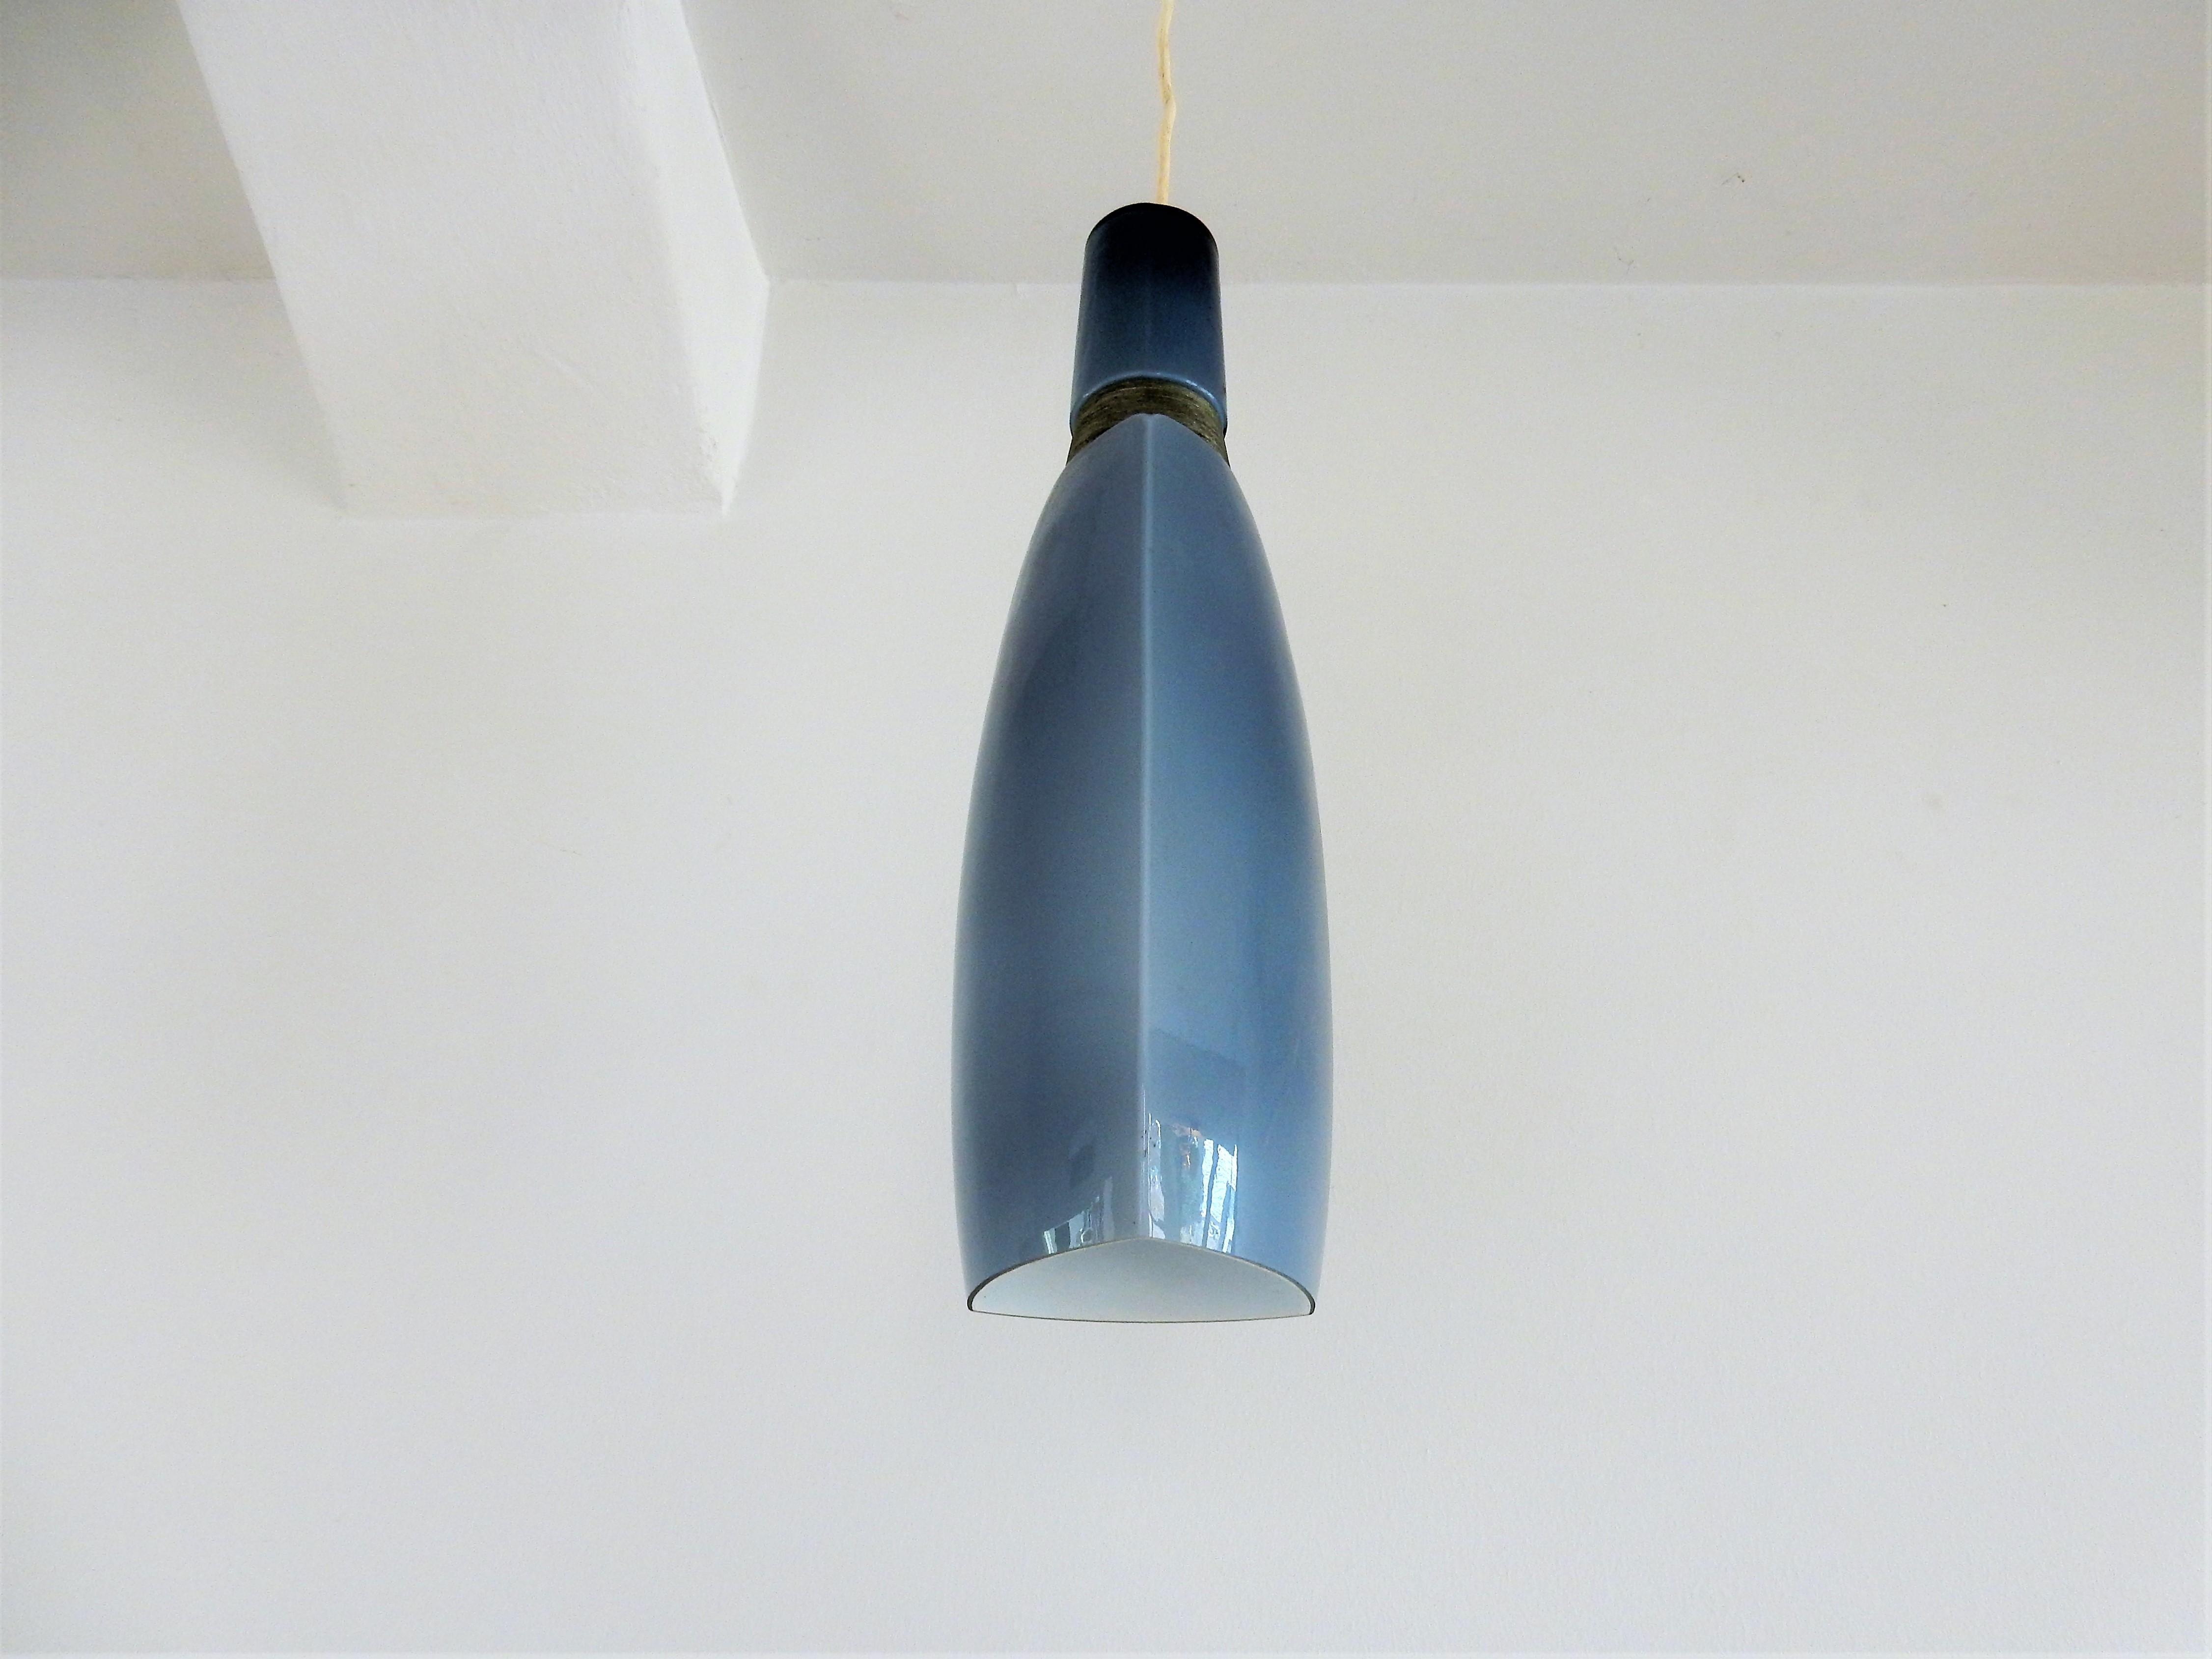 C'est une très belle lampe pendante vintage en verre bleu avec un détail en fil de métal. L'intérieur opalin donne une belle lumière douce. Ce luminaire est d'origine scandinave et souvent attribué à Holmegaard.